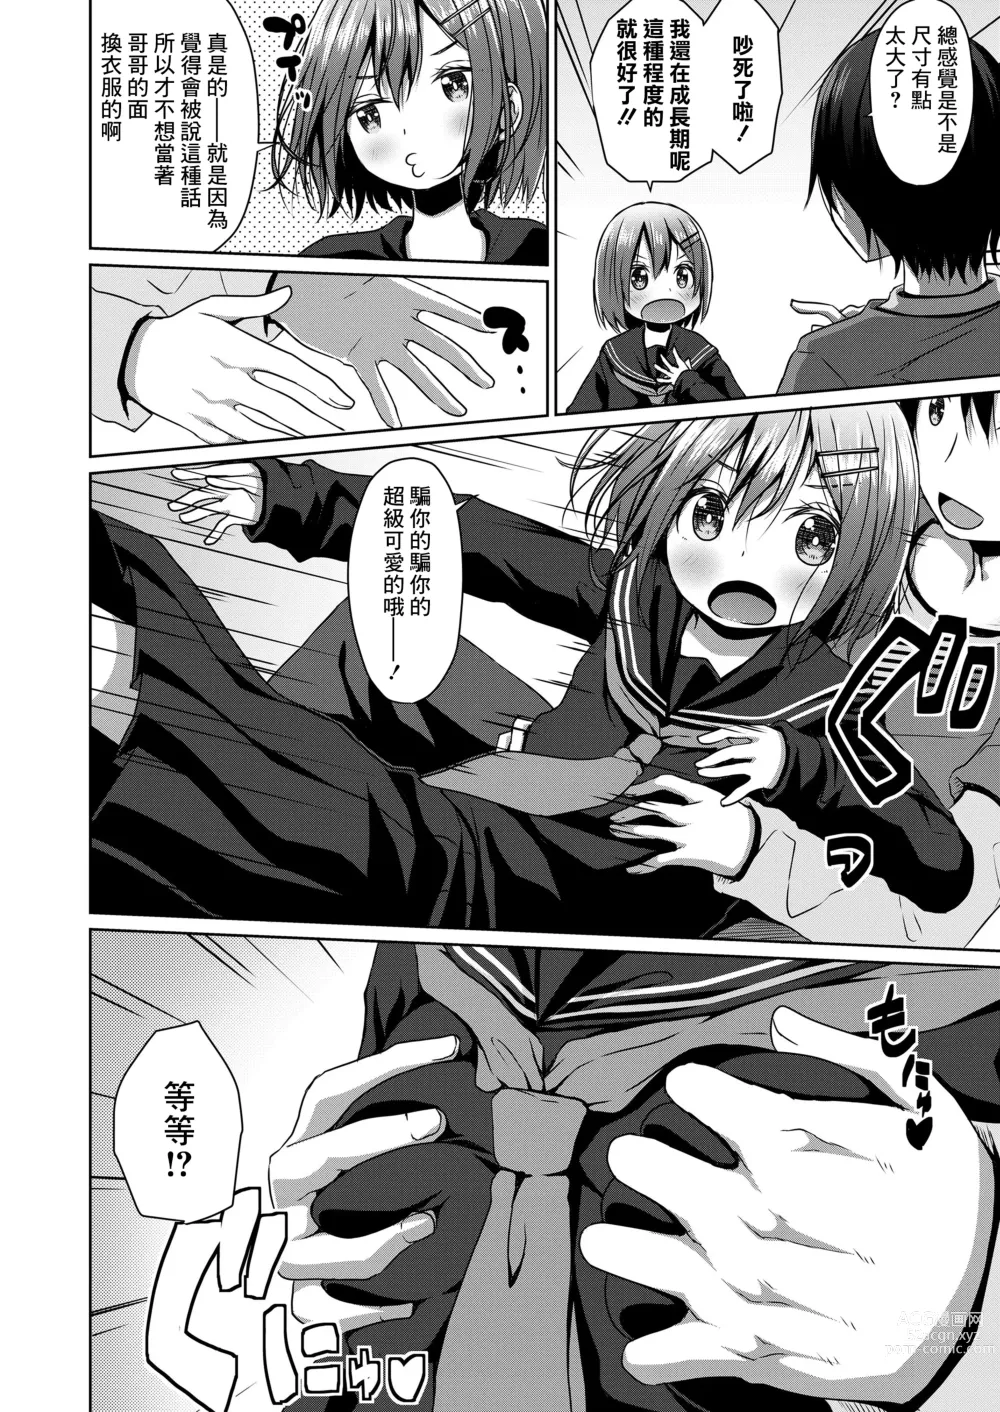 Page 4 of manga Seifuku